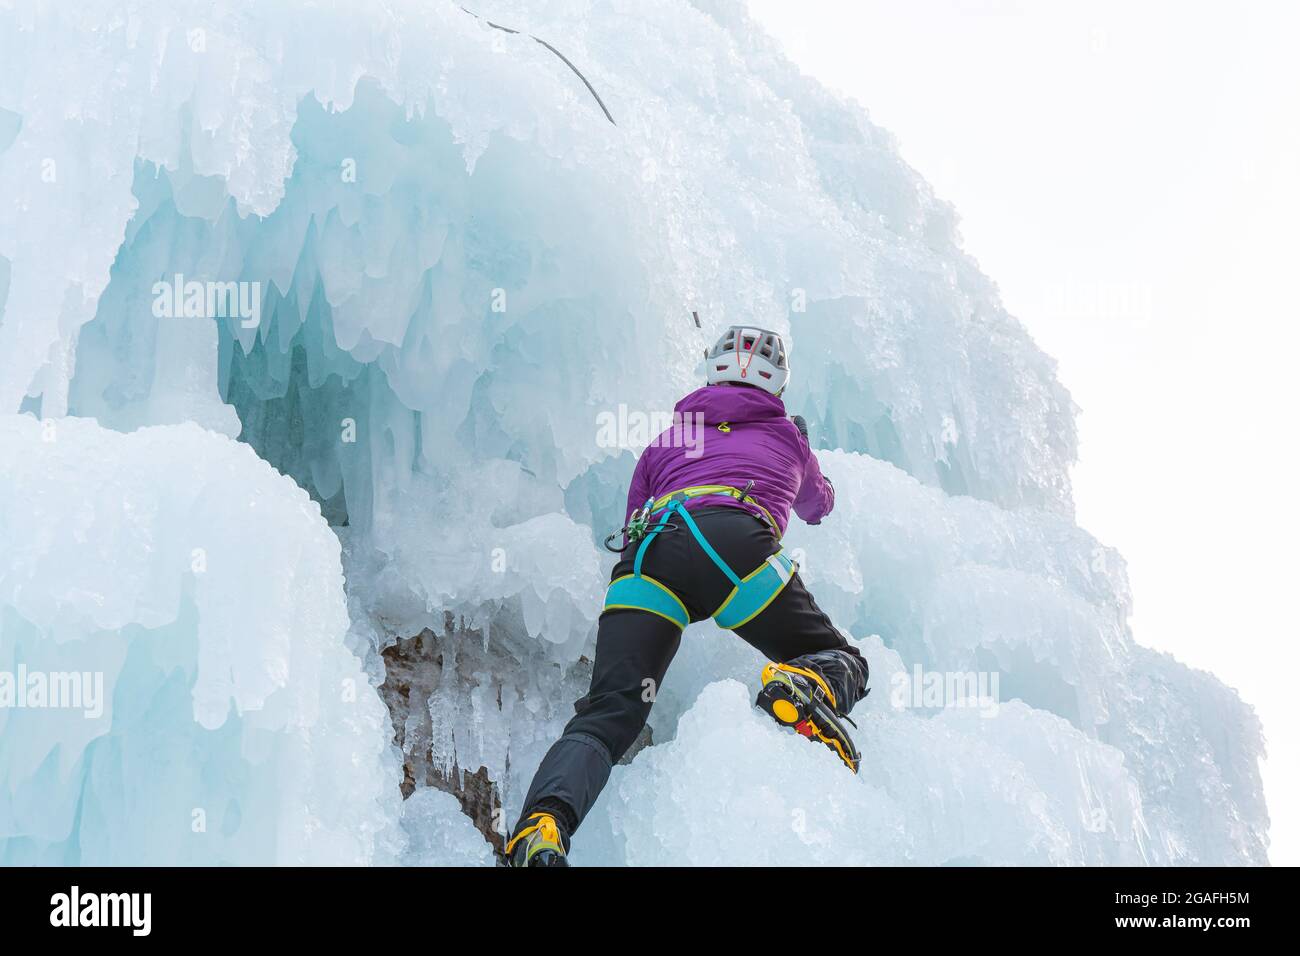 Eiskletterin klettert die Seite eines vereisten Hanges mit Unebenheiten, Graten und Eiszapfen hinauf Stockfoto